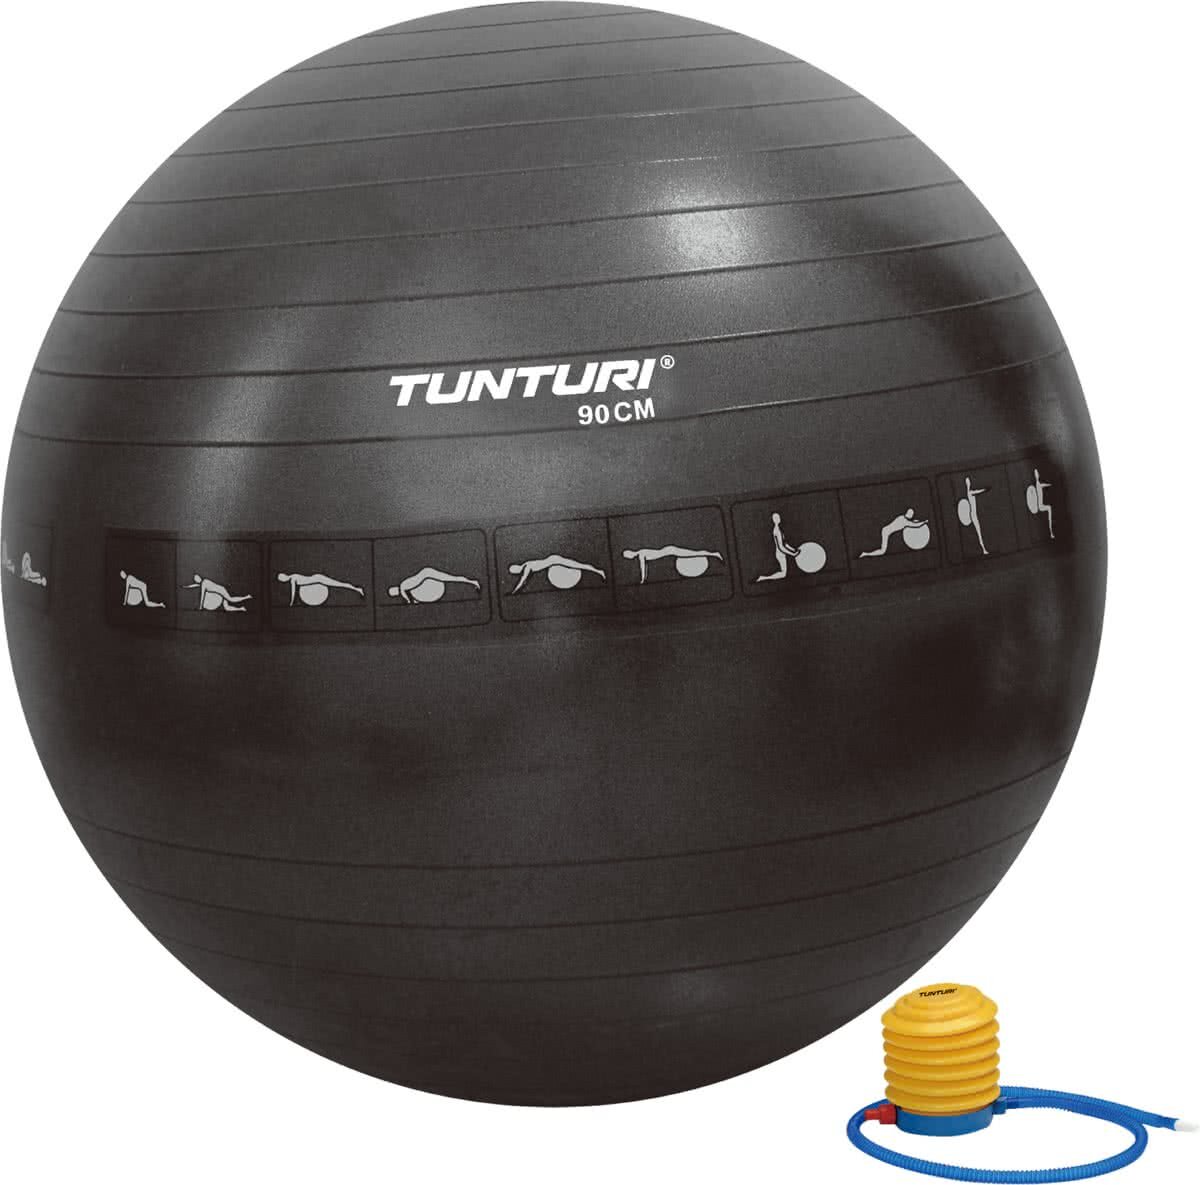 Tunturi Tunturi Anti-Burst Fitnessbal 90cm